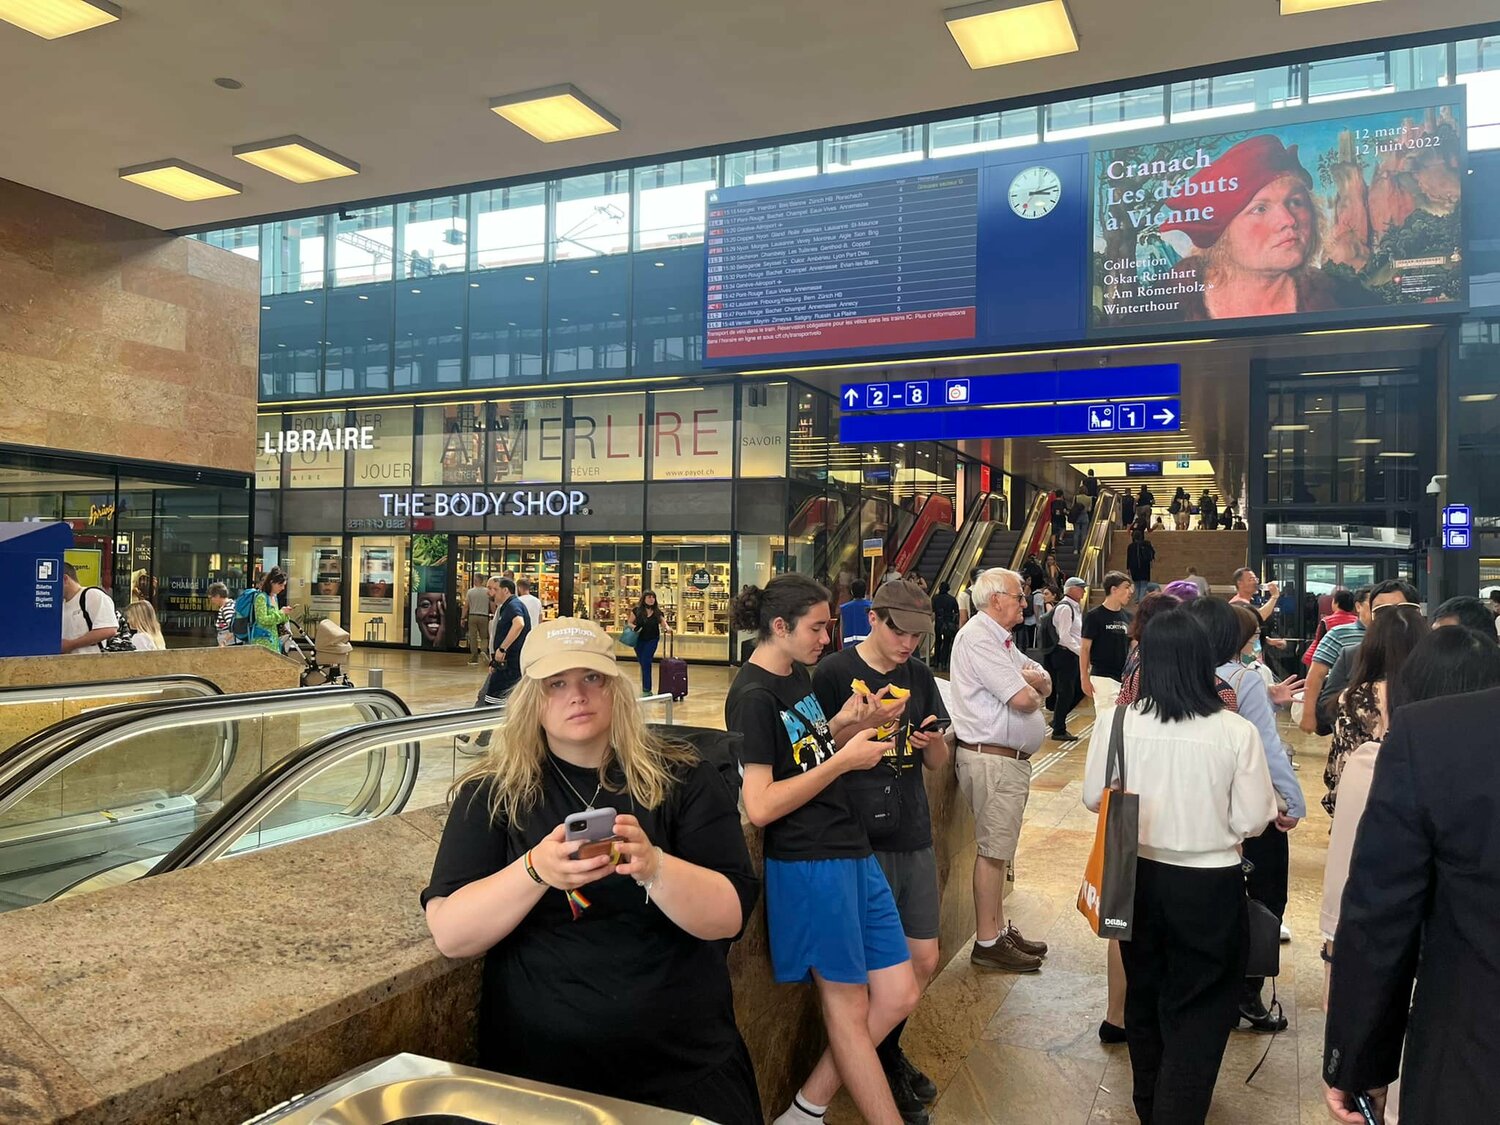 立委林靜儀隨團前往日內瓦，她在臉書po出瑞士日內瓦車站的照片表示，入場沒有量體溫、酒精消毒，沒有人戴口罩，大家「正常生活」。   圖：翻攝自林靜儀臉書